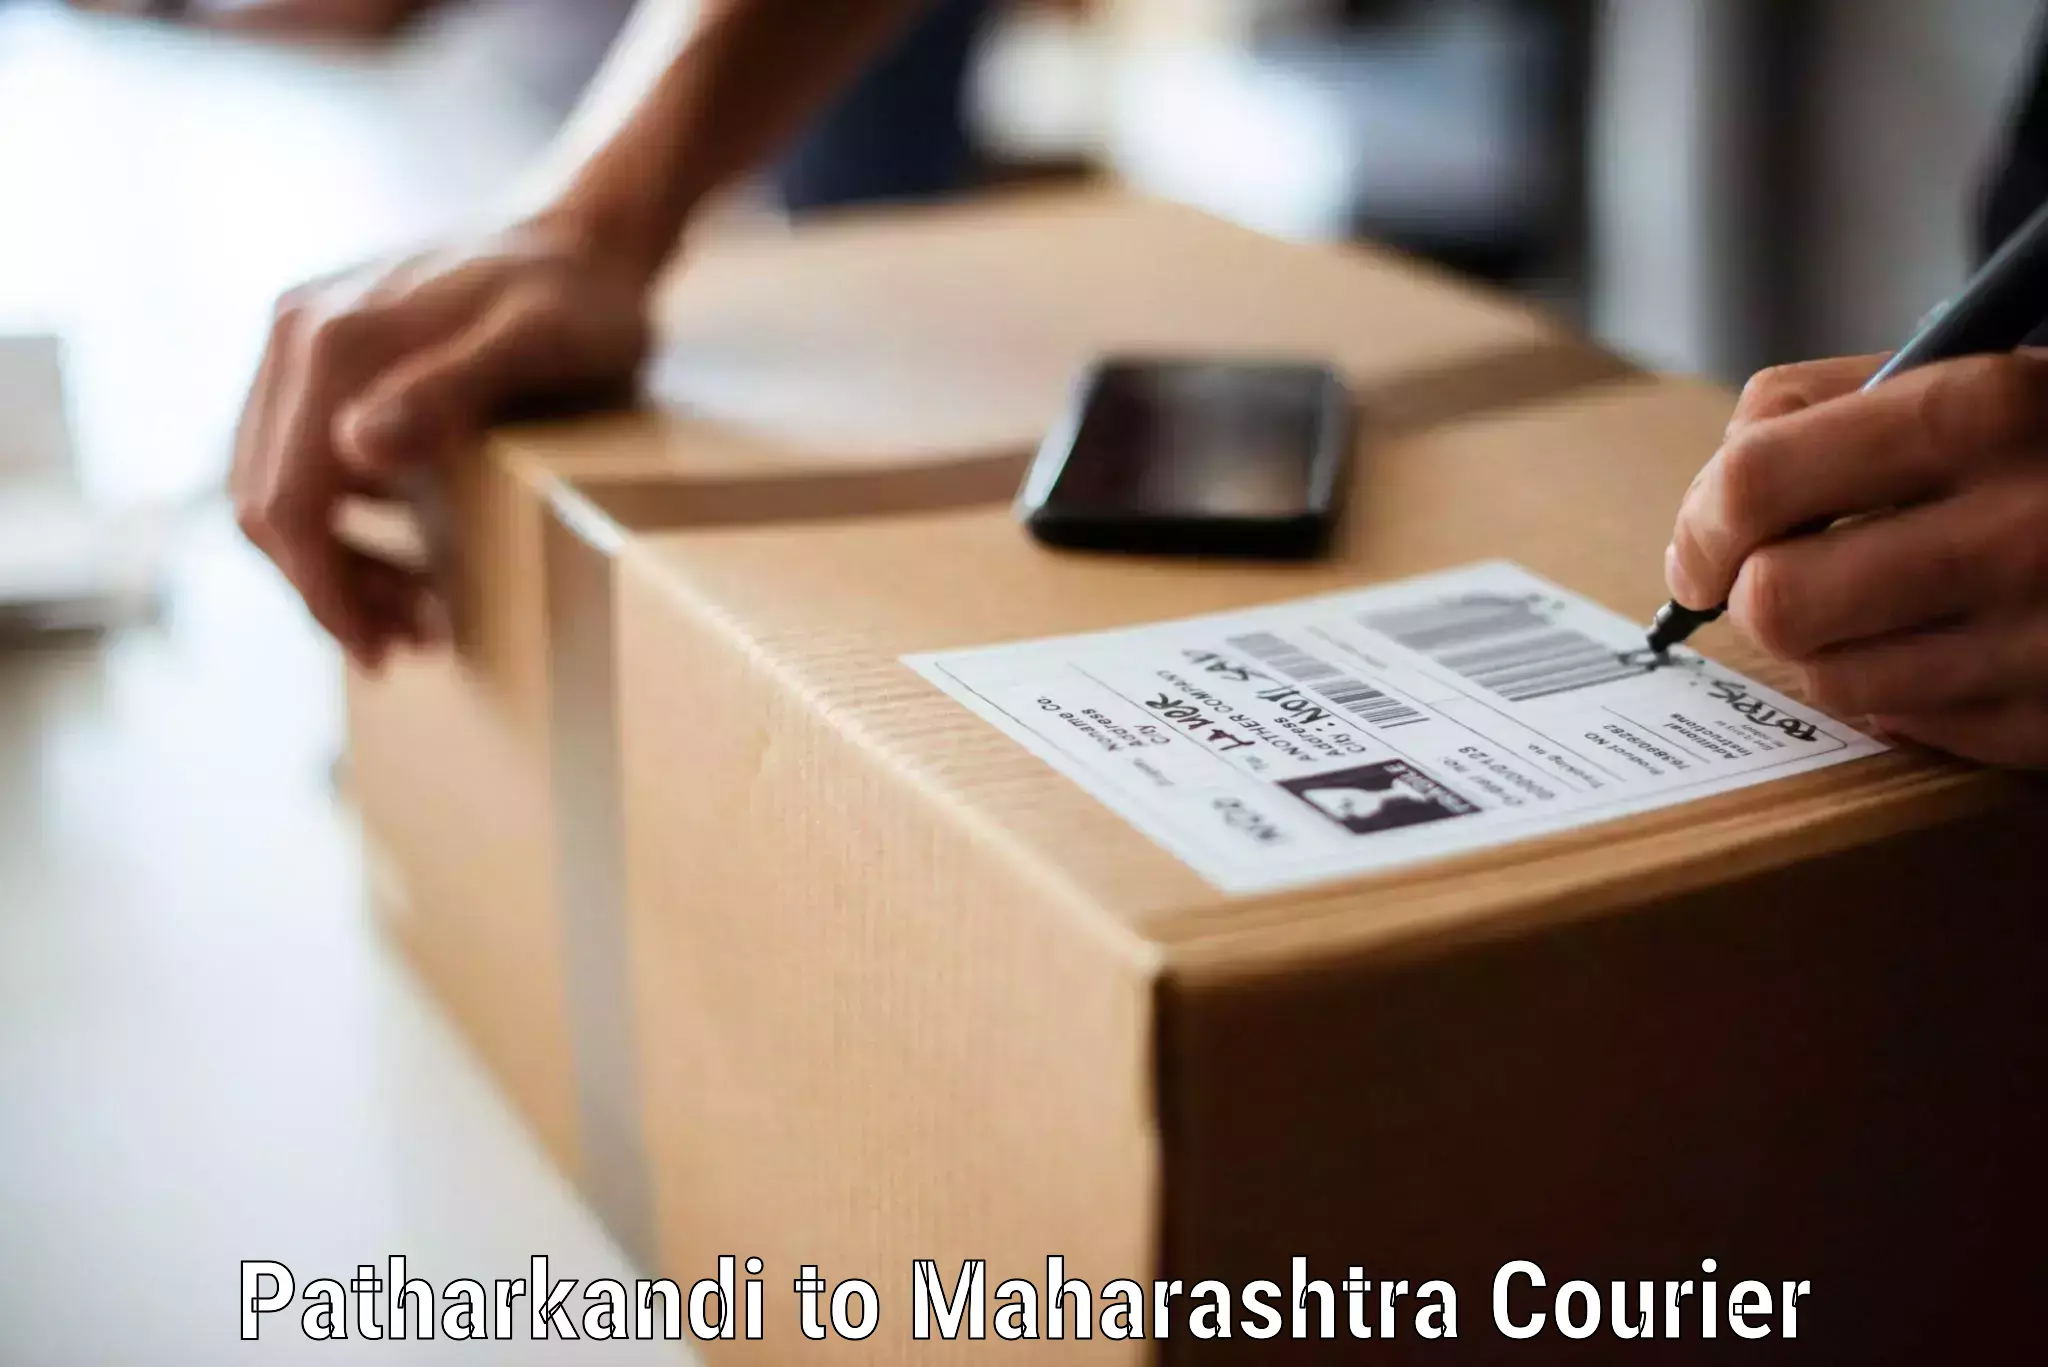 Furniture moving and handling Patharkandi to Mahabaleshwar